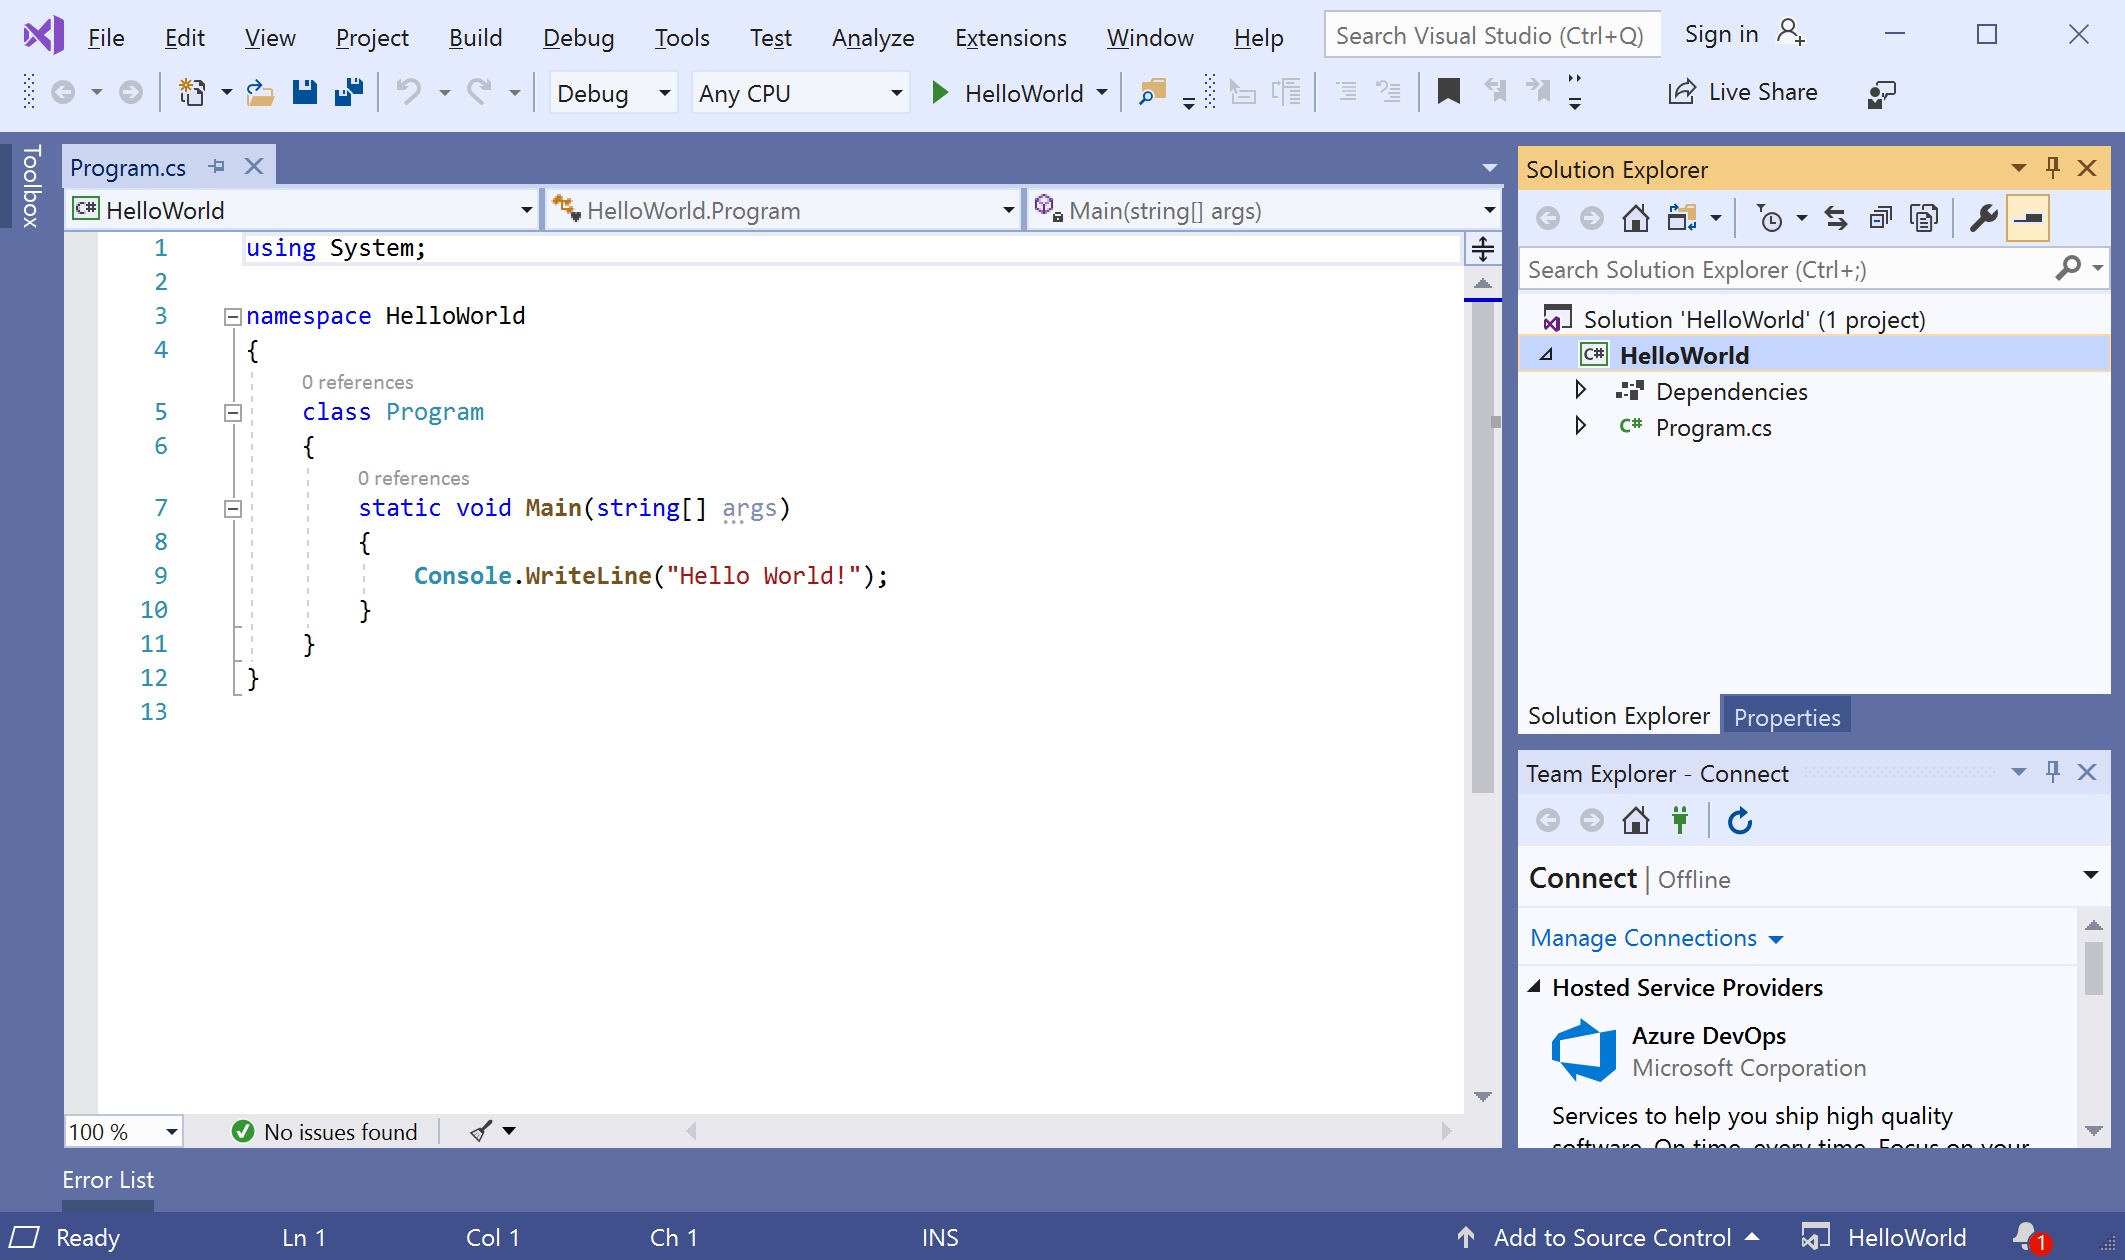 Tutorial: Create a simple C# console app - Visual Studio (Windows